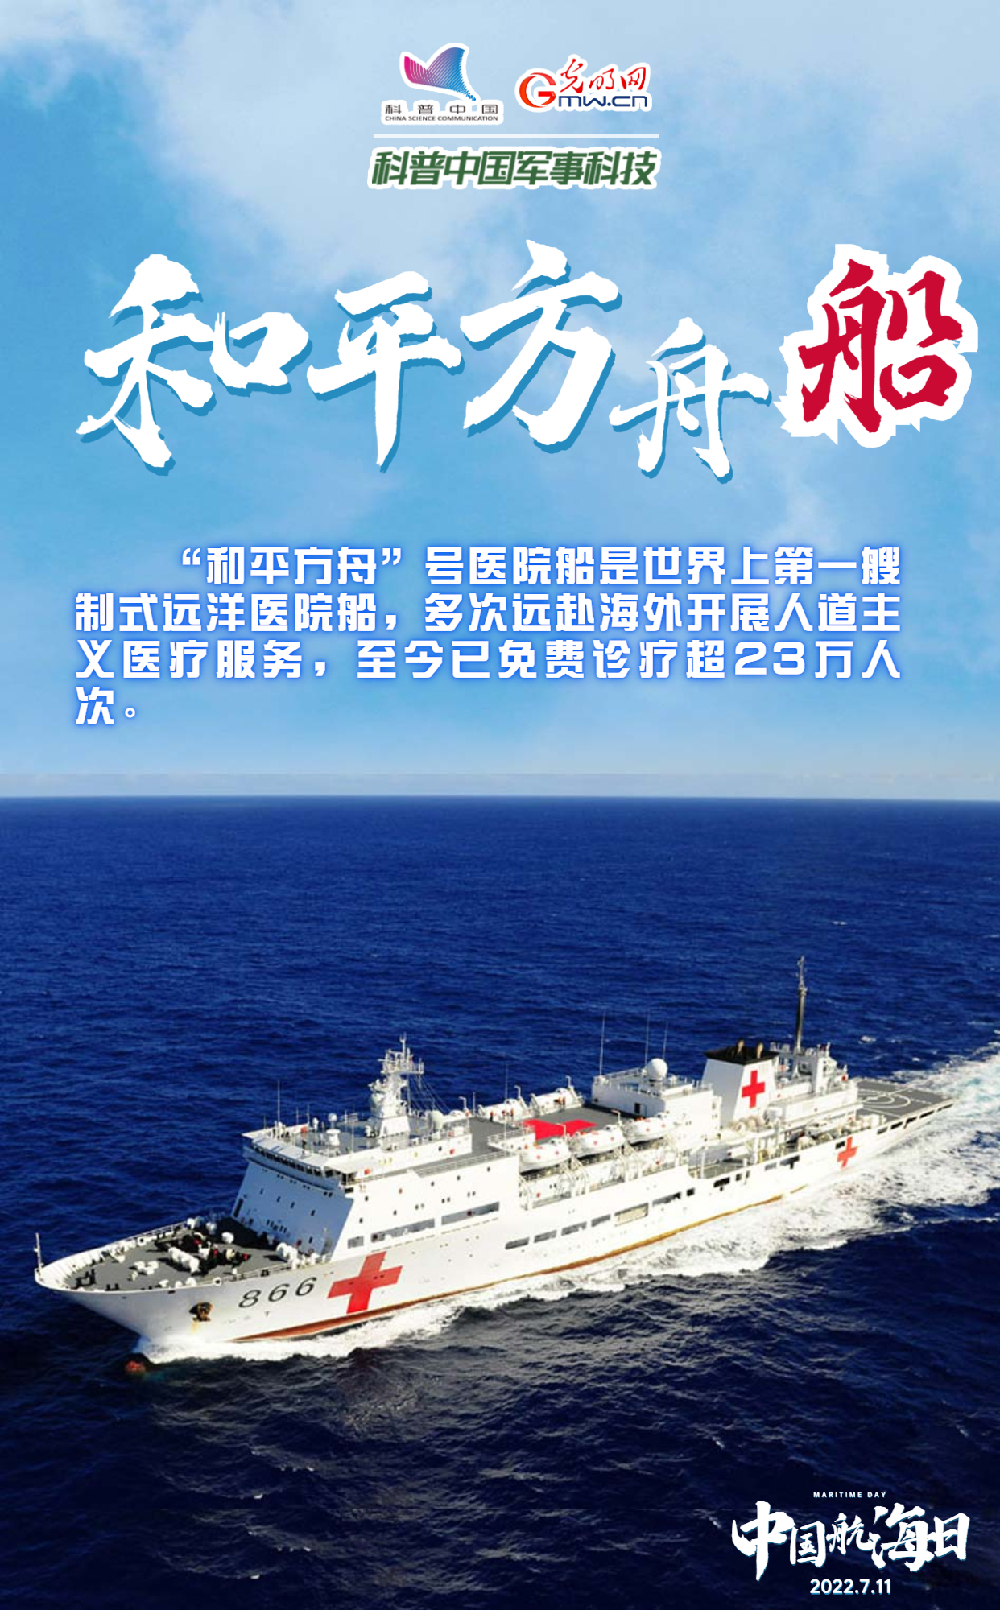 【中国航海日】悠悠华夏万里海江，人民海军向海图强！